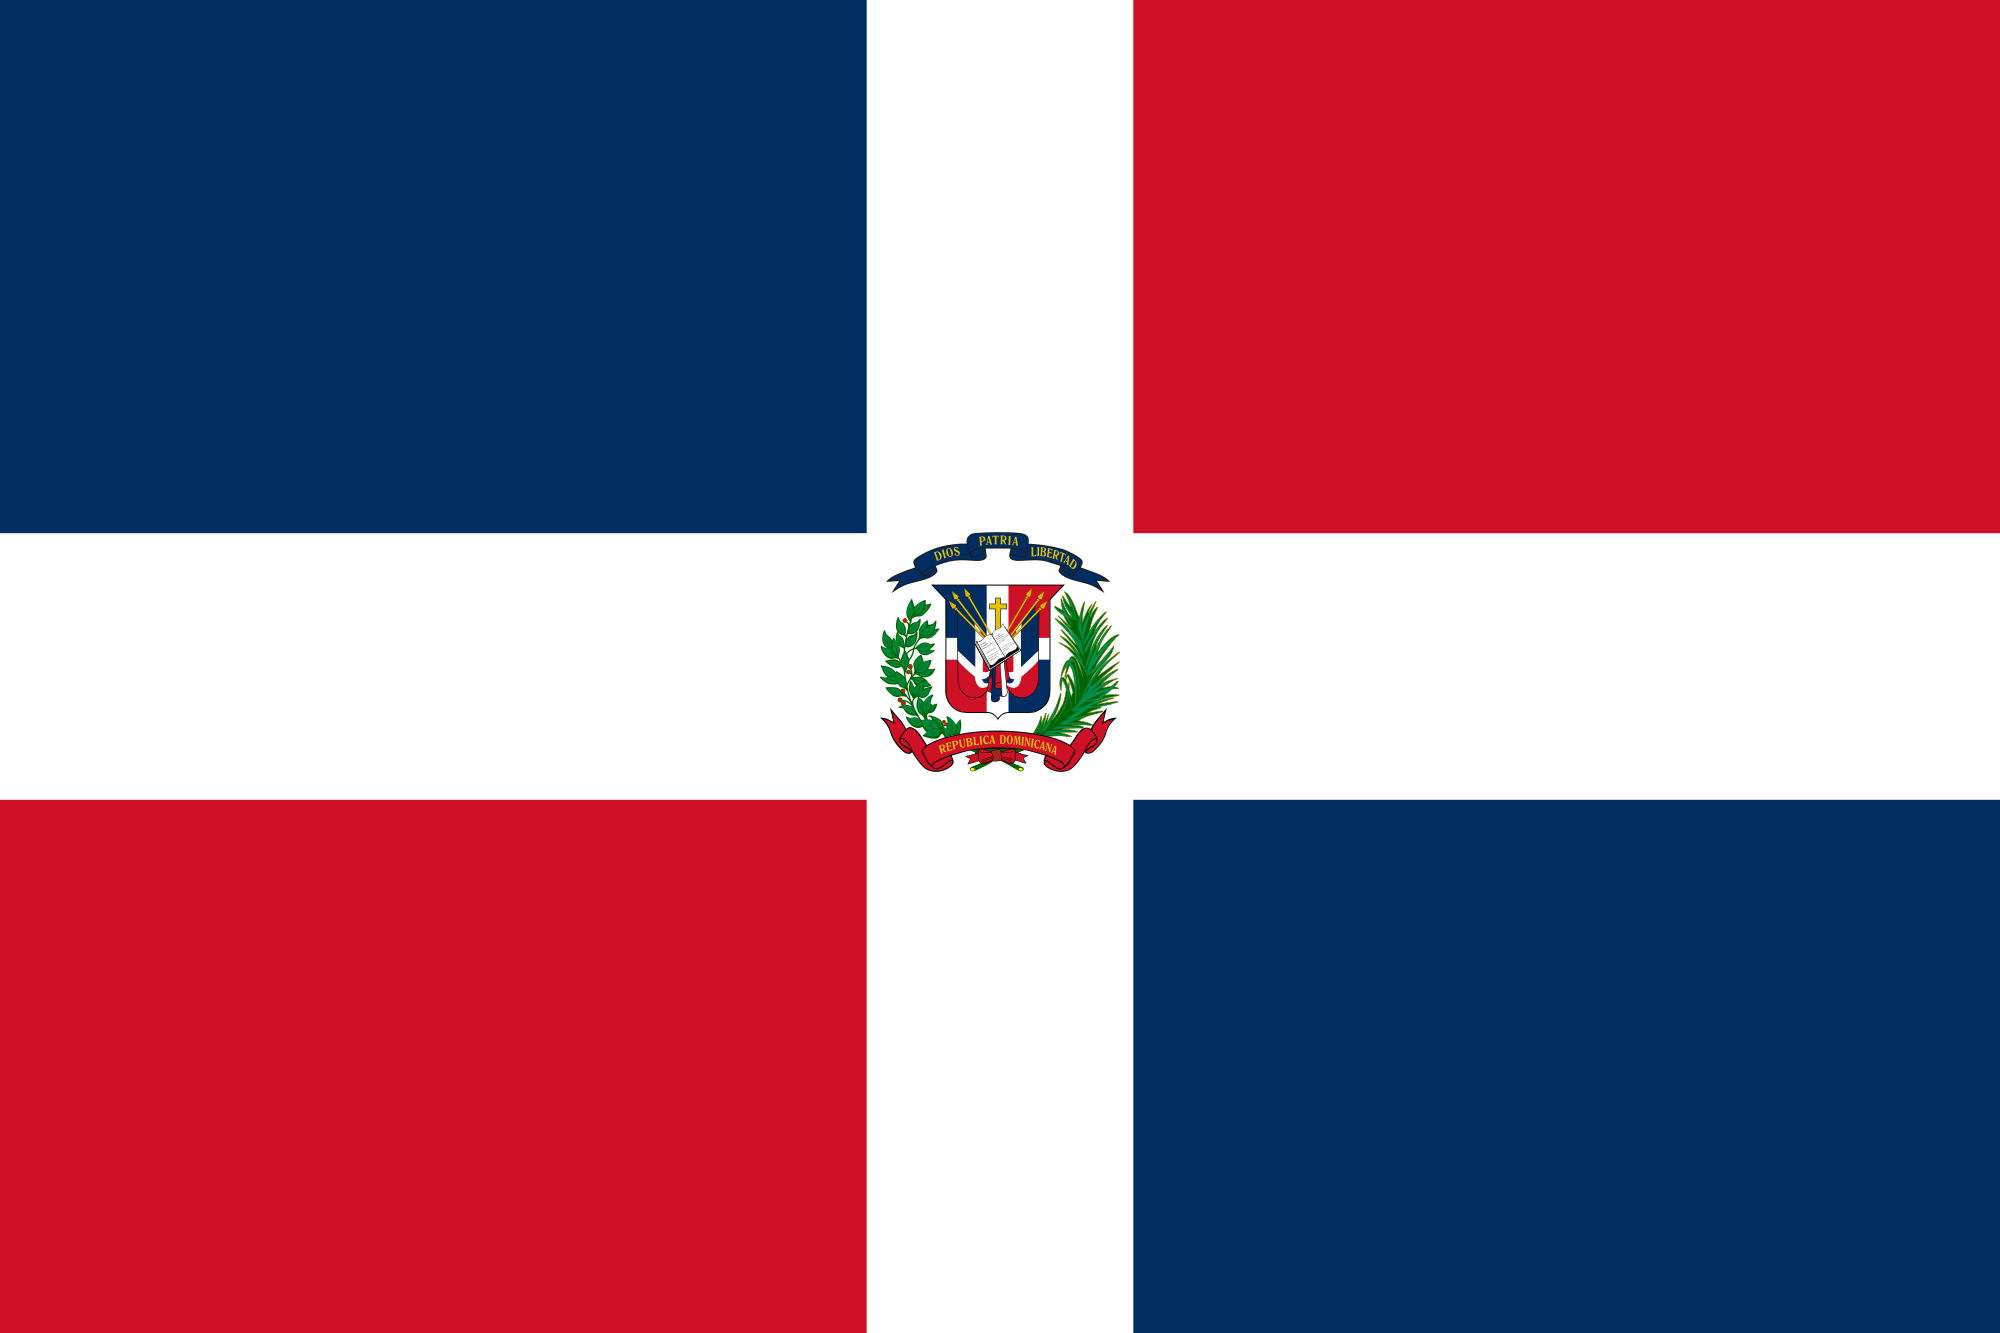 Republica Dominicana Education Around The World